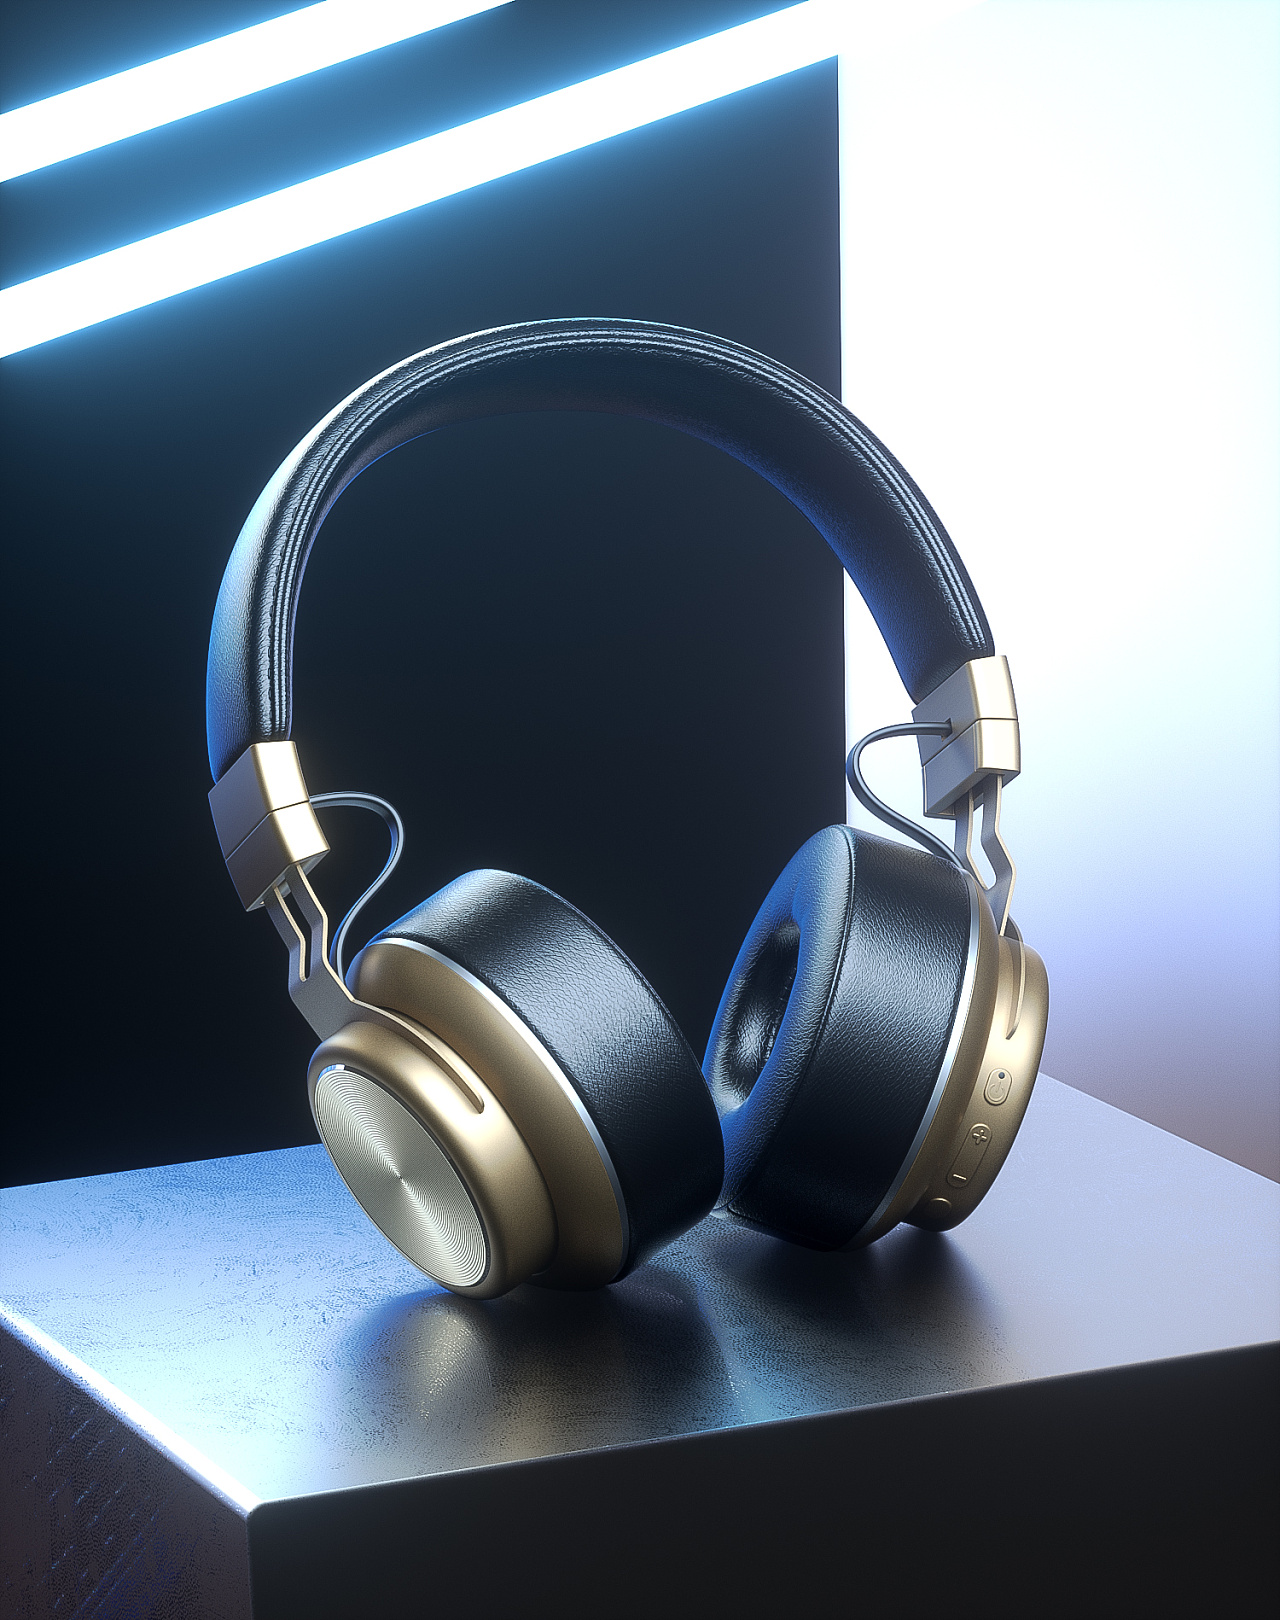 头戴式立体声蓝牙耳机LC-9200,折叠式,重低音,有线无线通用,-阿里巴巴